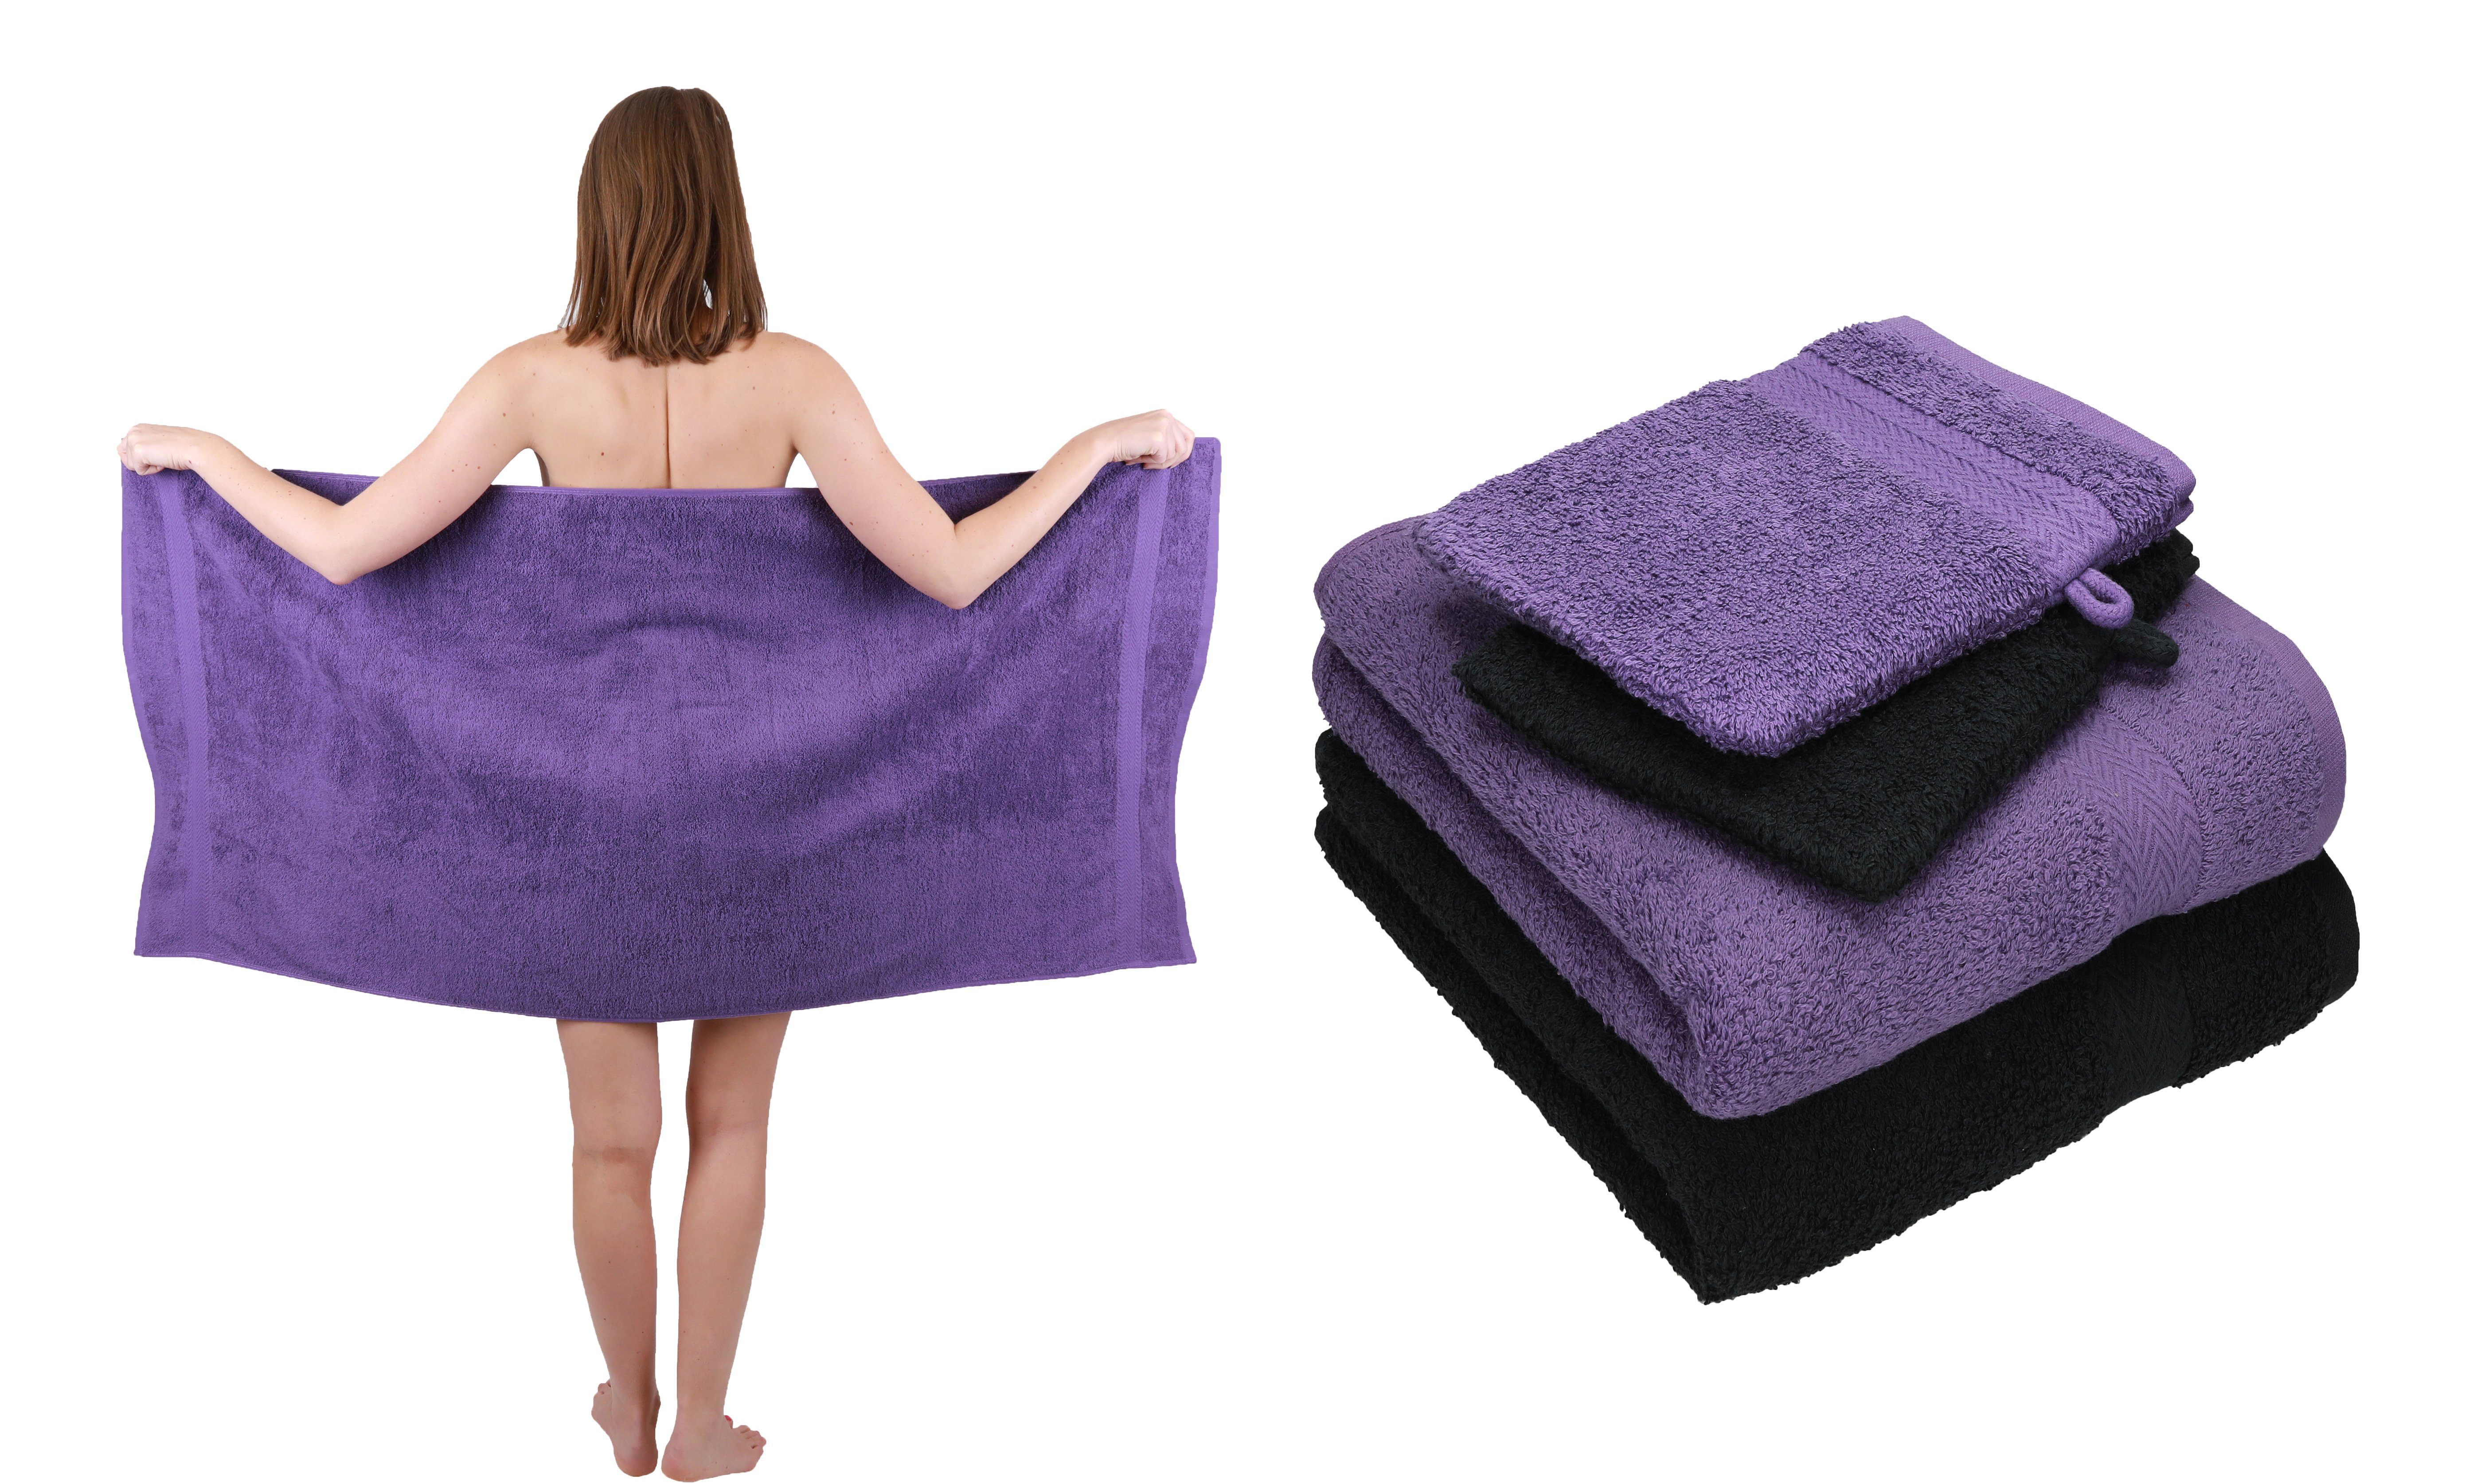 Betz Handtuch Set 5 TLG. Handtuch Set Single Pack 100% Baumwolle 1 Duschtuch 2 Handtücher 2 Waschhandschuhe, 100% Baumwolle lila-schwarz